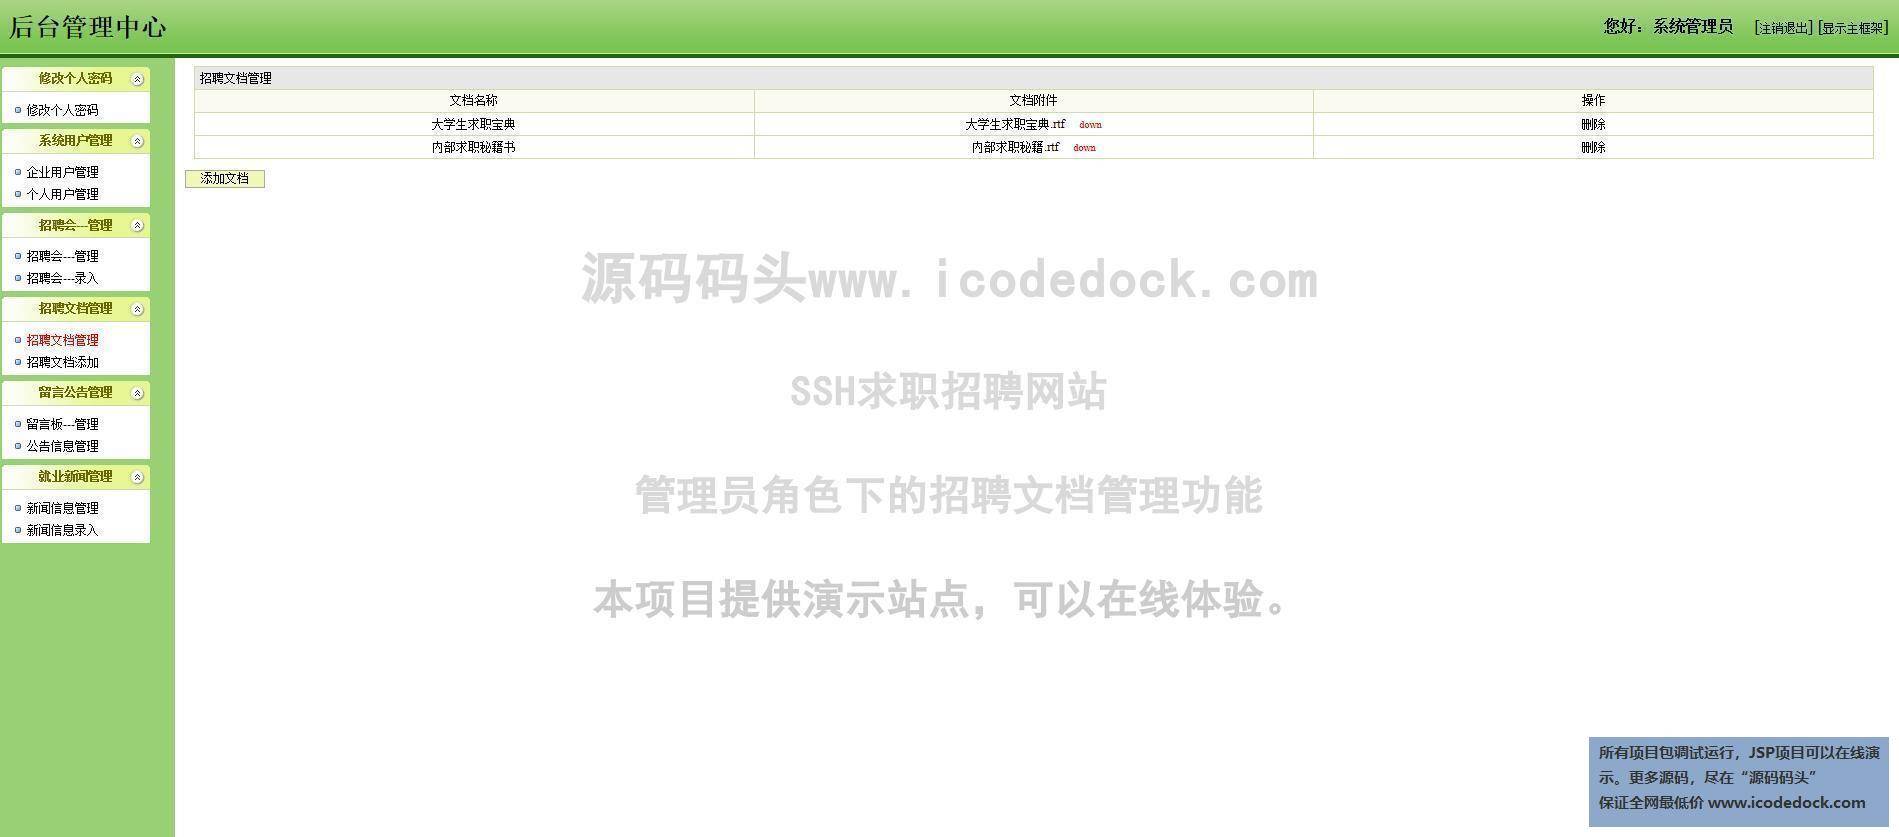 源码码头-SSH求职招聘网站-管理员角色-招聘文档管理